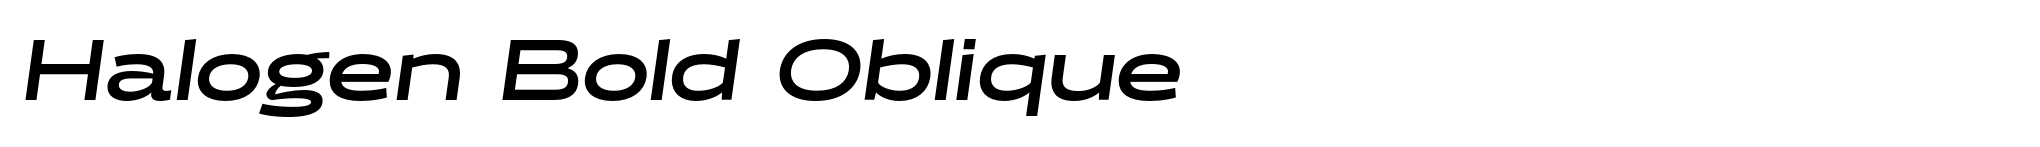 Halogen Bold Oblique image